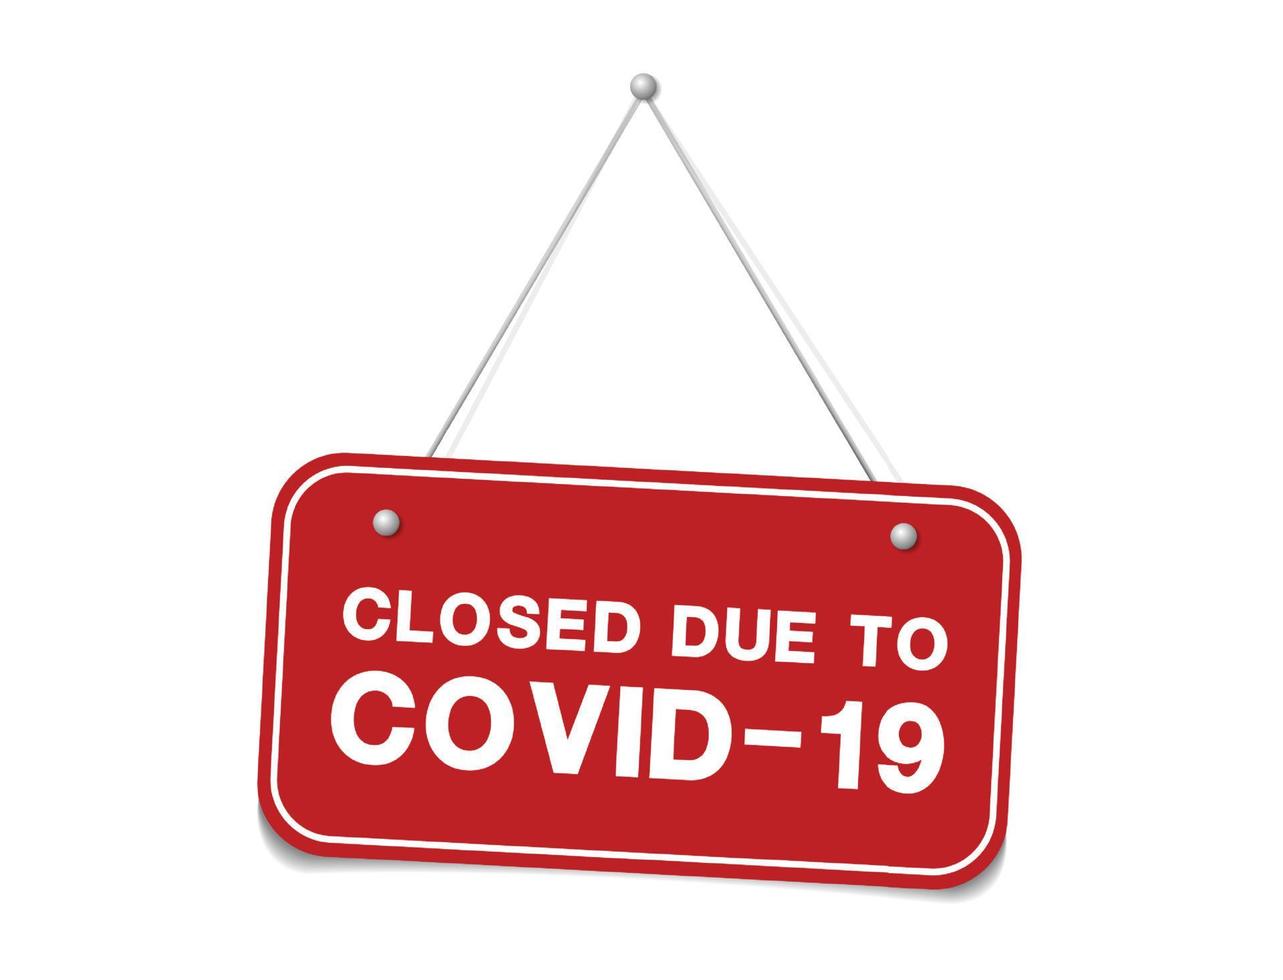 hangend bord over coronavirus en close-up op een rood gesloten bord van een winkel met het bericht sorry gesloten vanwege coronavirus. vector